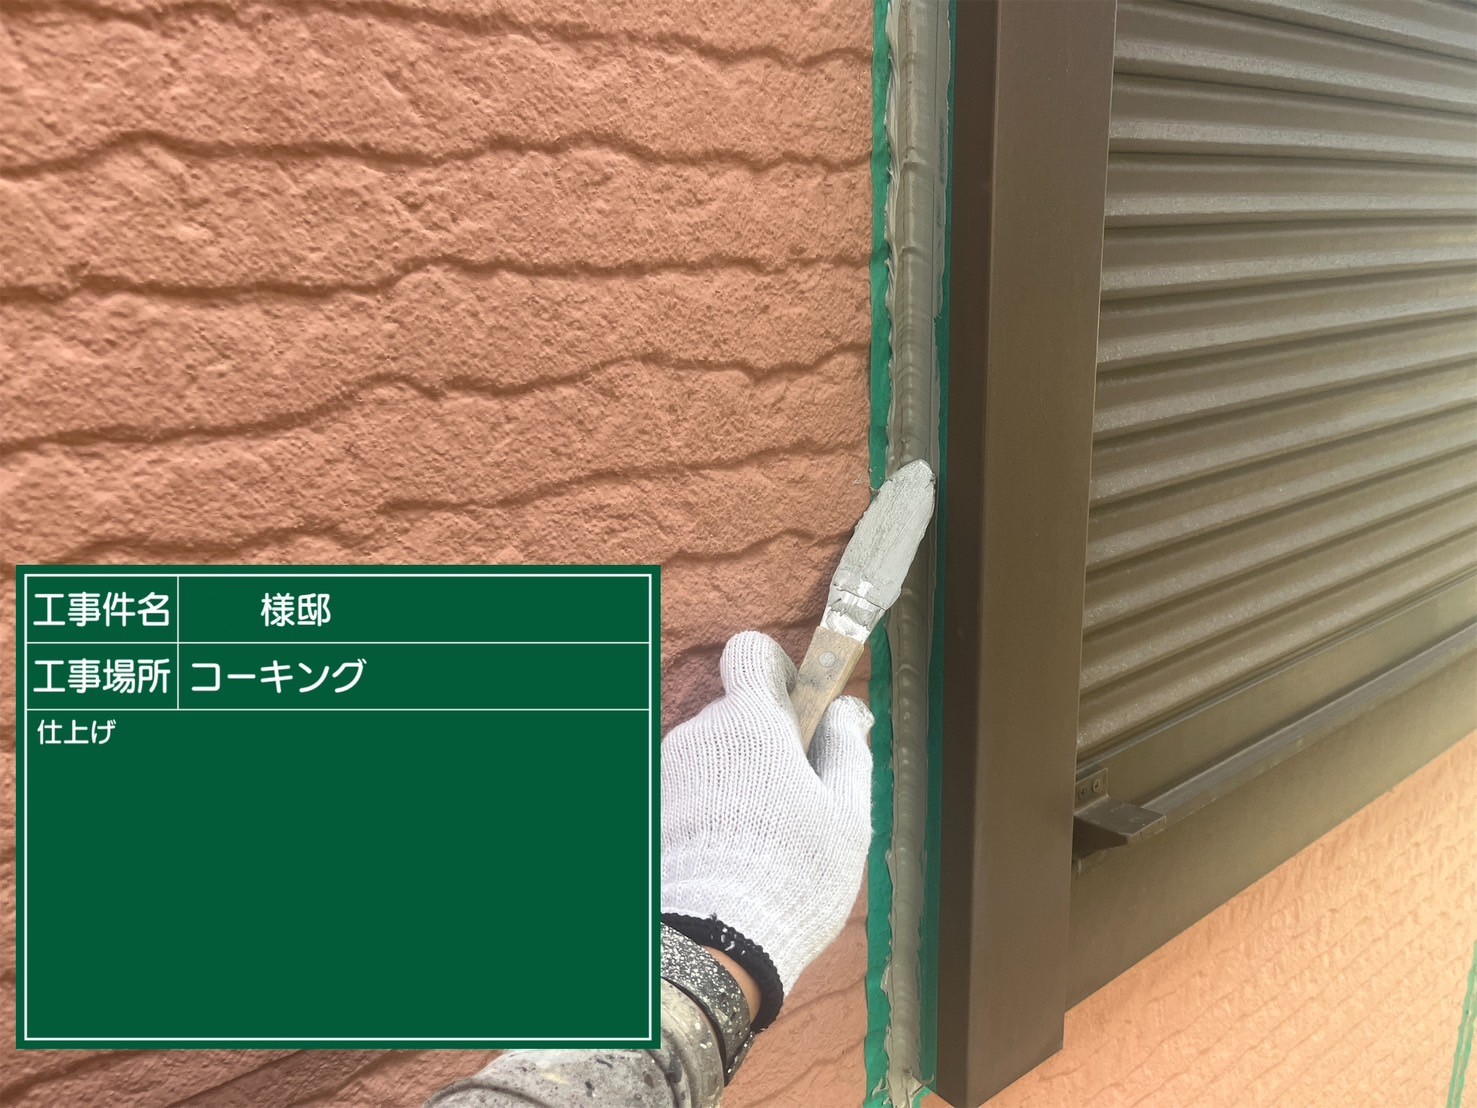 佐賀県三養基郡基山町けやき台のO様邸で超高耐久のプレマテックス社のタテイルαを使用した外壁塗装と屋根カバーのシーガードでの改修工事を行っています。5/14着工です。【HPより】